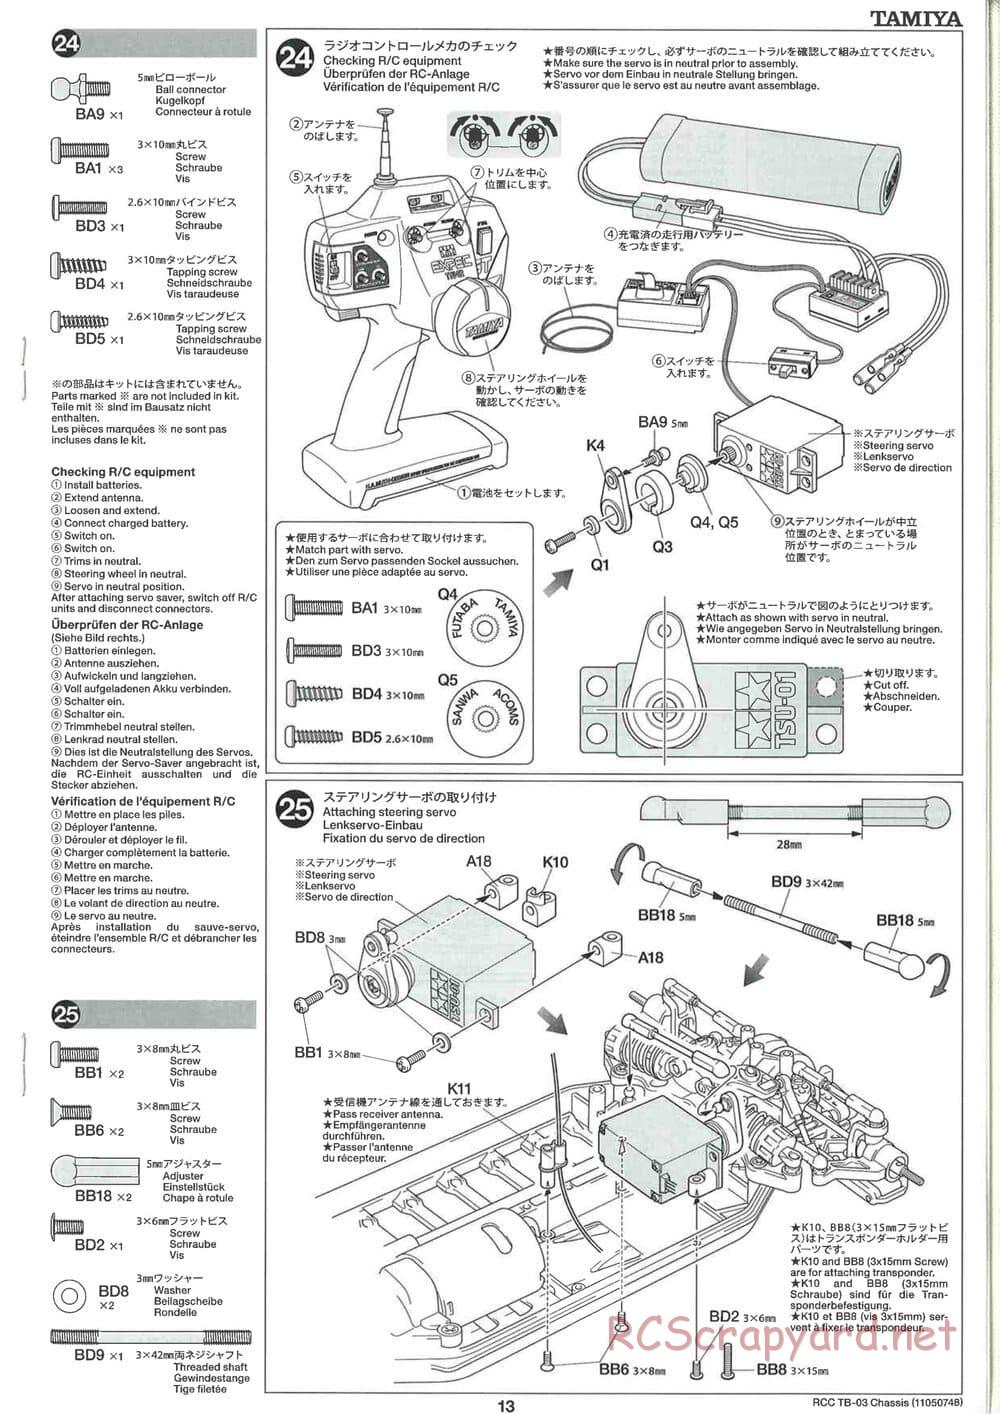 Tamiya - TB-03 Chassis - Manual - Page 13